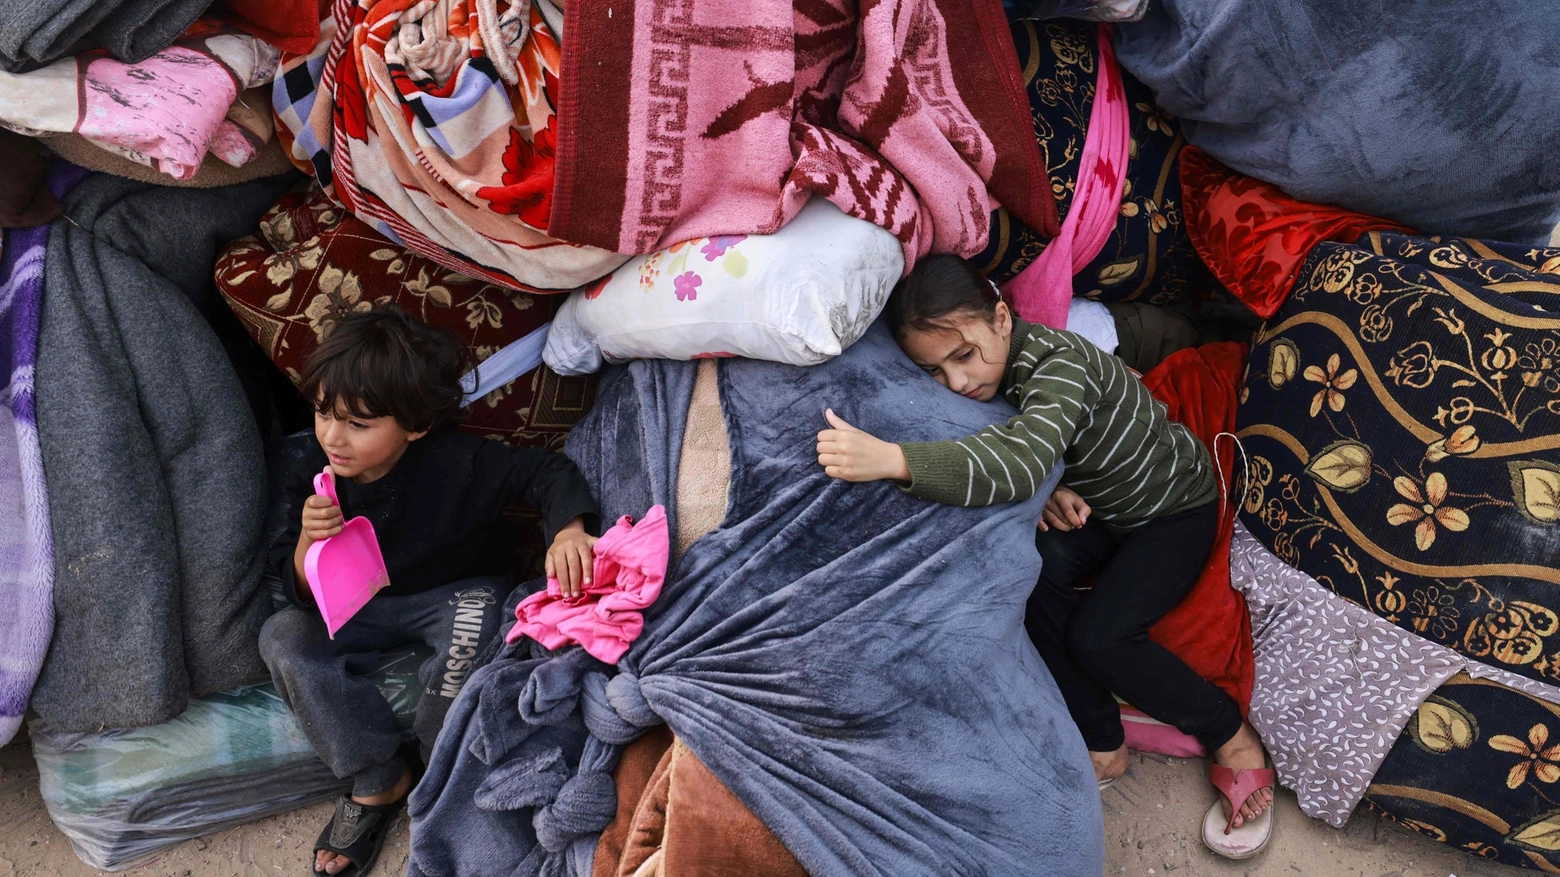 Famiglie in fuga verso Rafah: è emergenza umanitaria